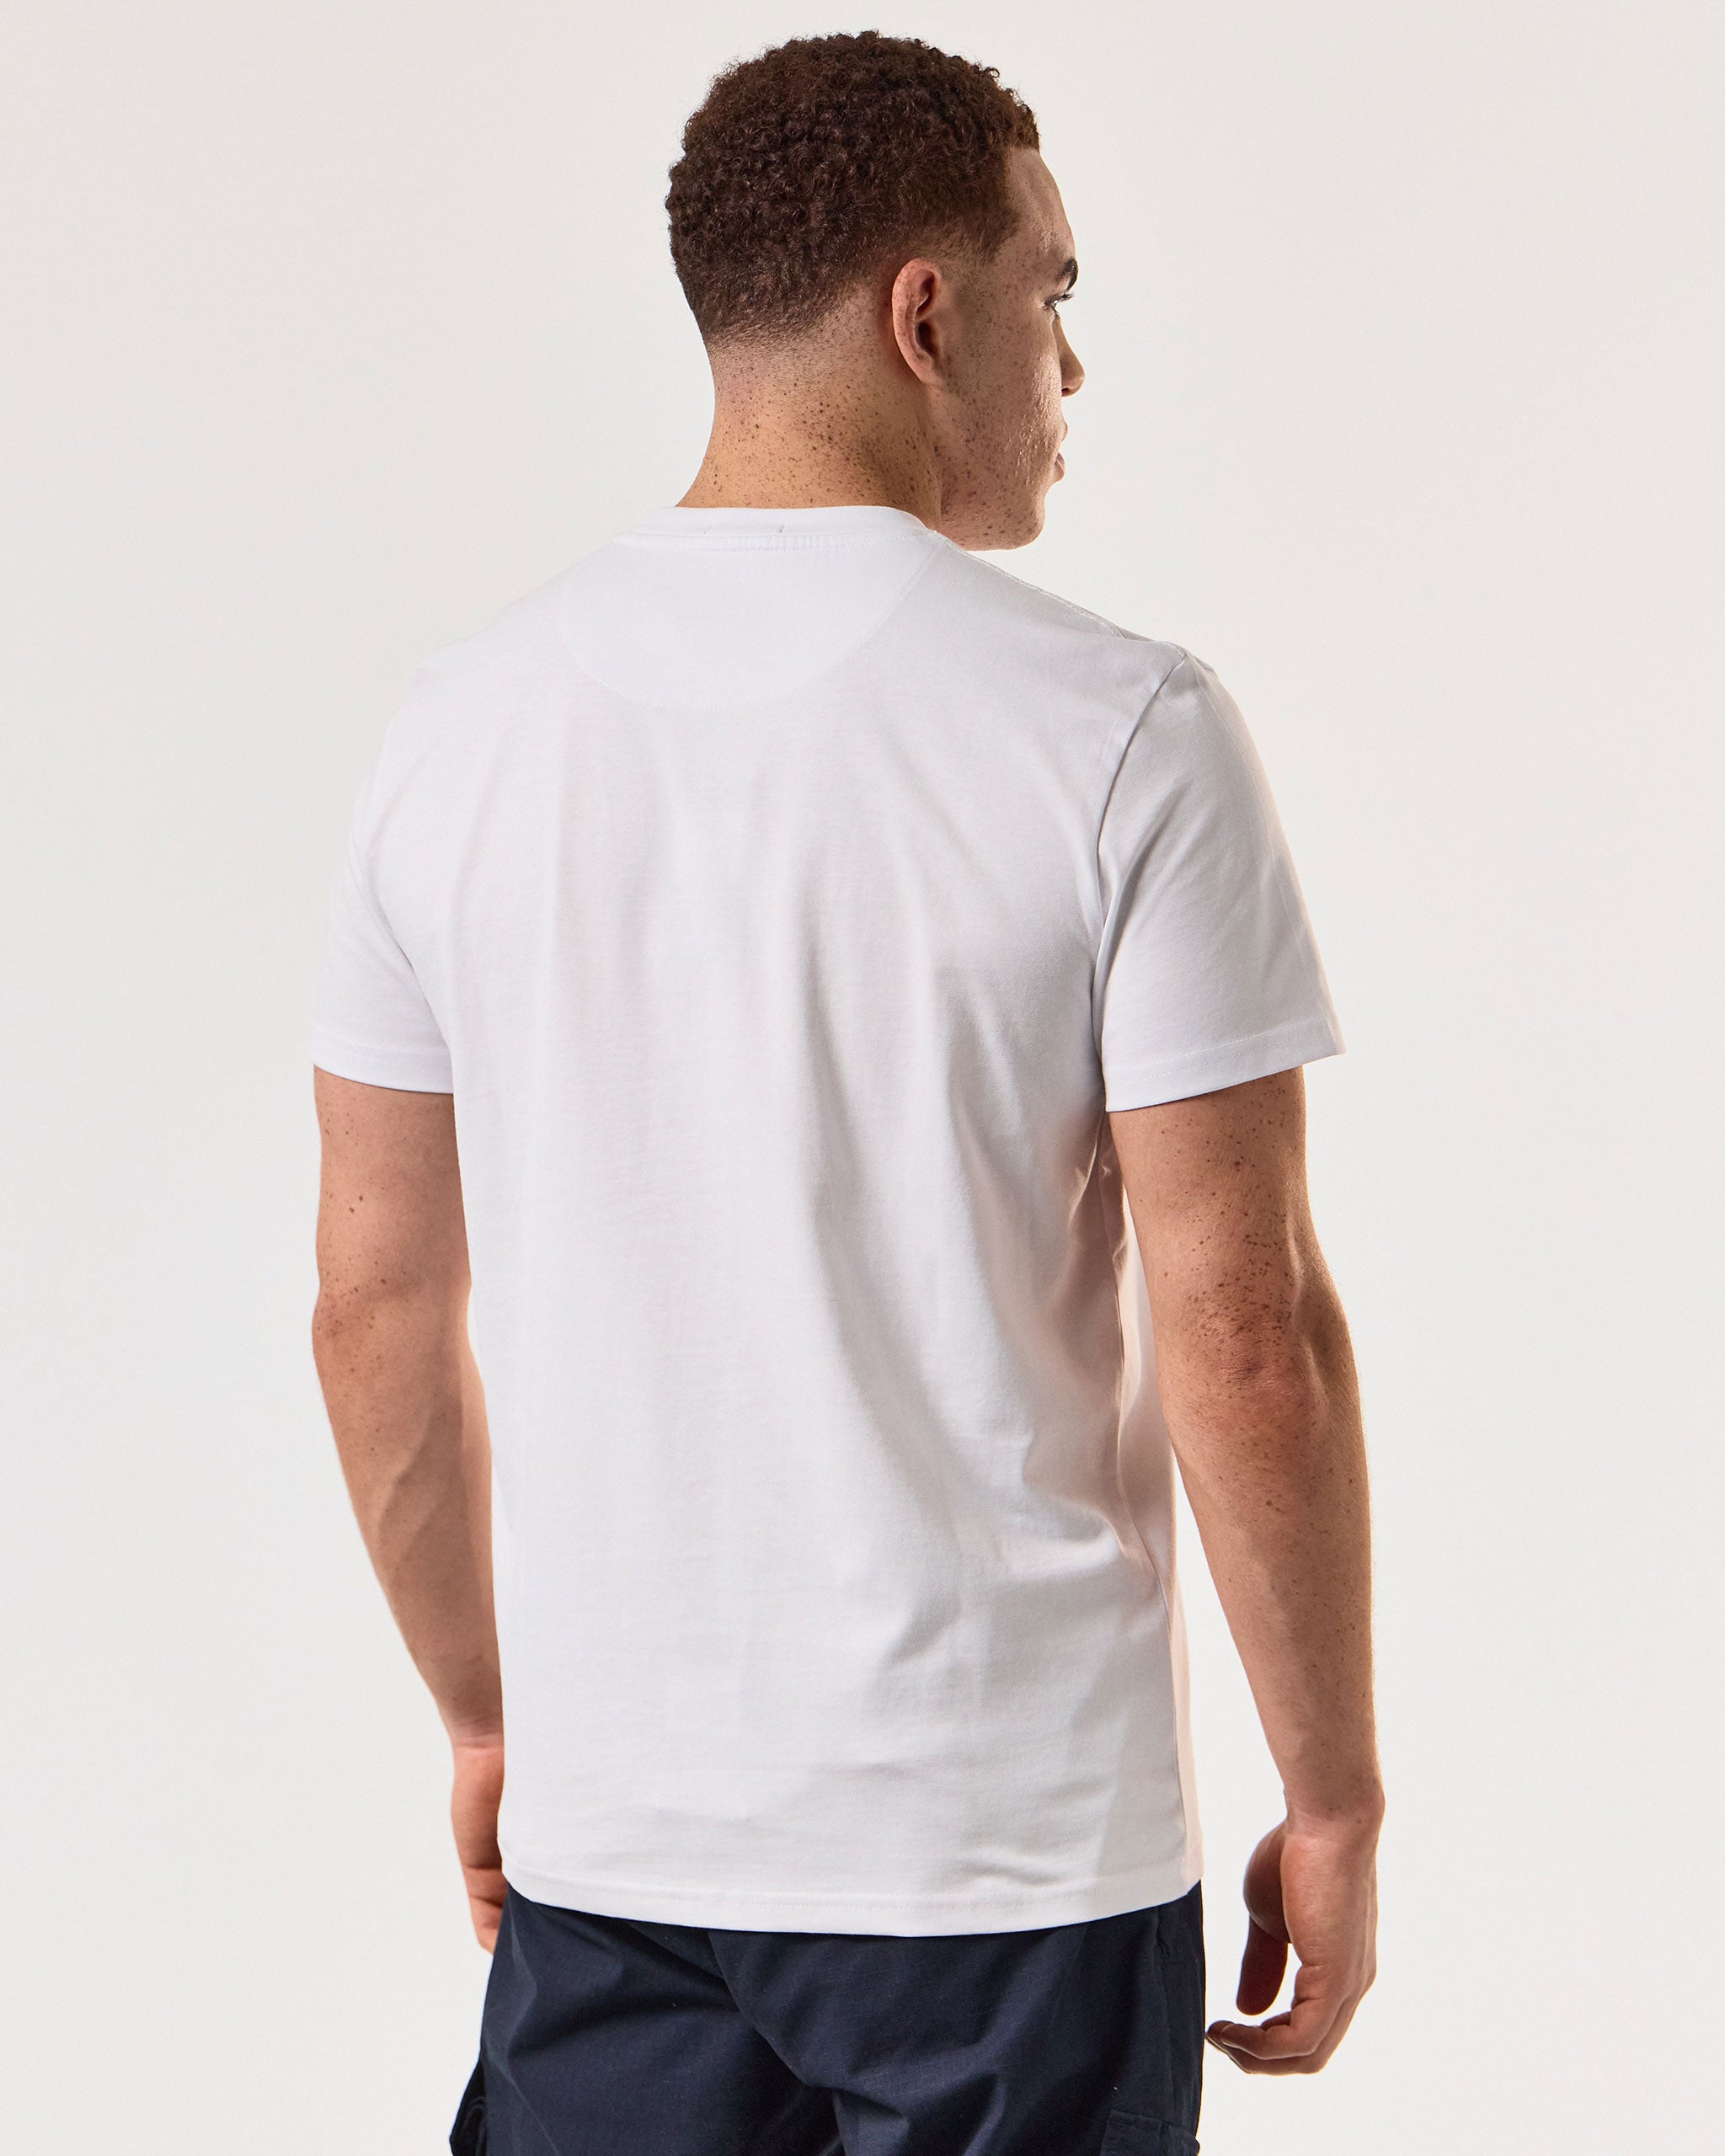 Shoom Graphic T-Shirt White